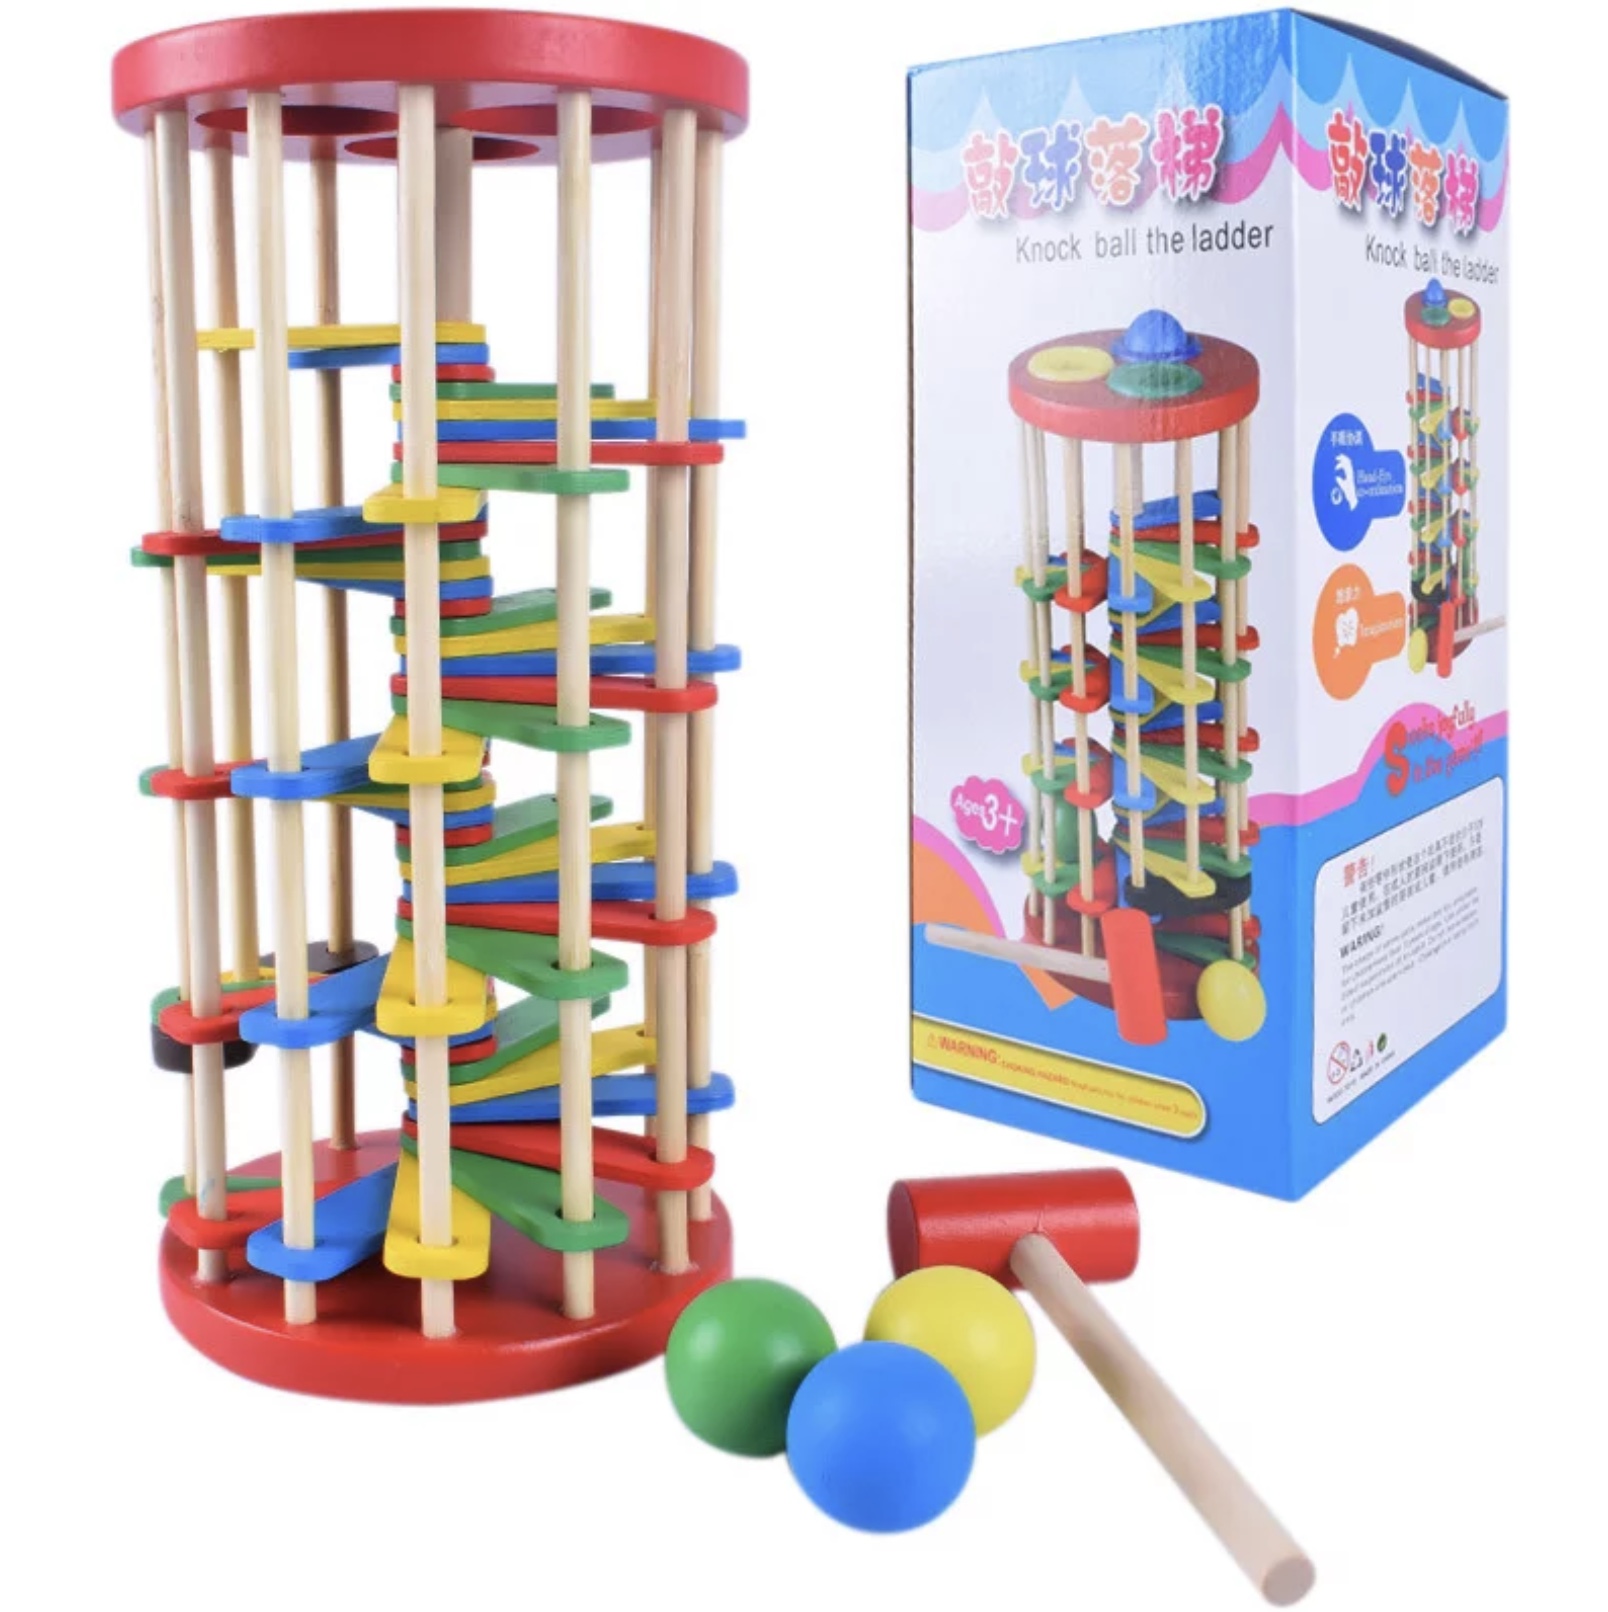 Joc din lemn de tip cilindru cu bile de plastic și ciocan pentru unde mânare de tip Montessori pentru copii de vârsta peste trei ani